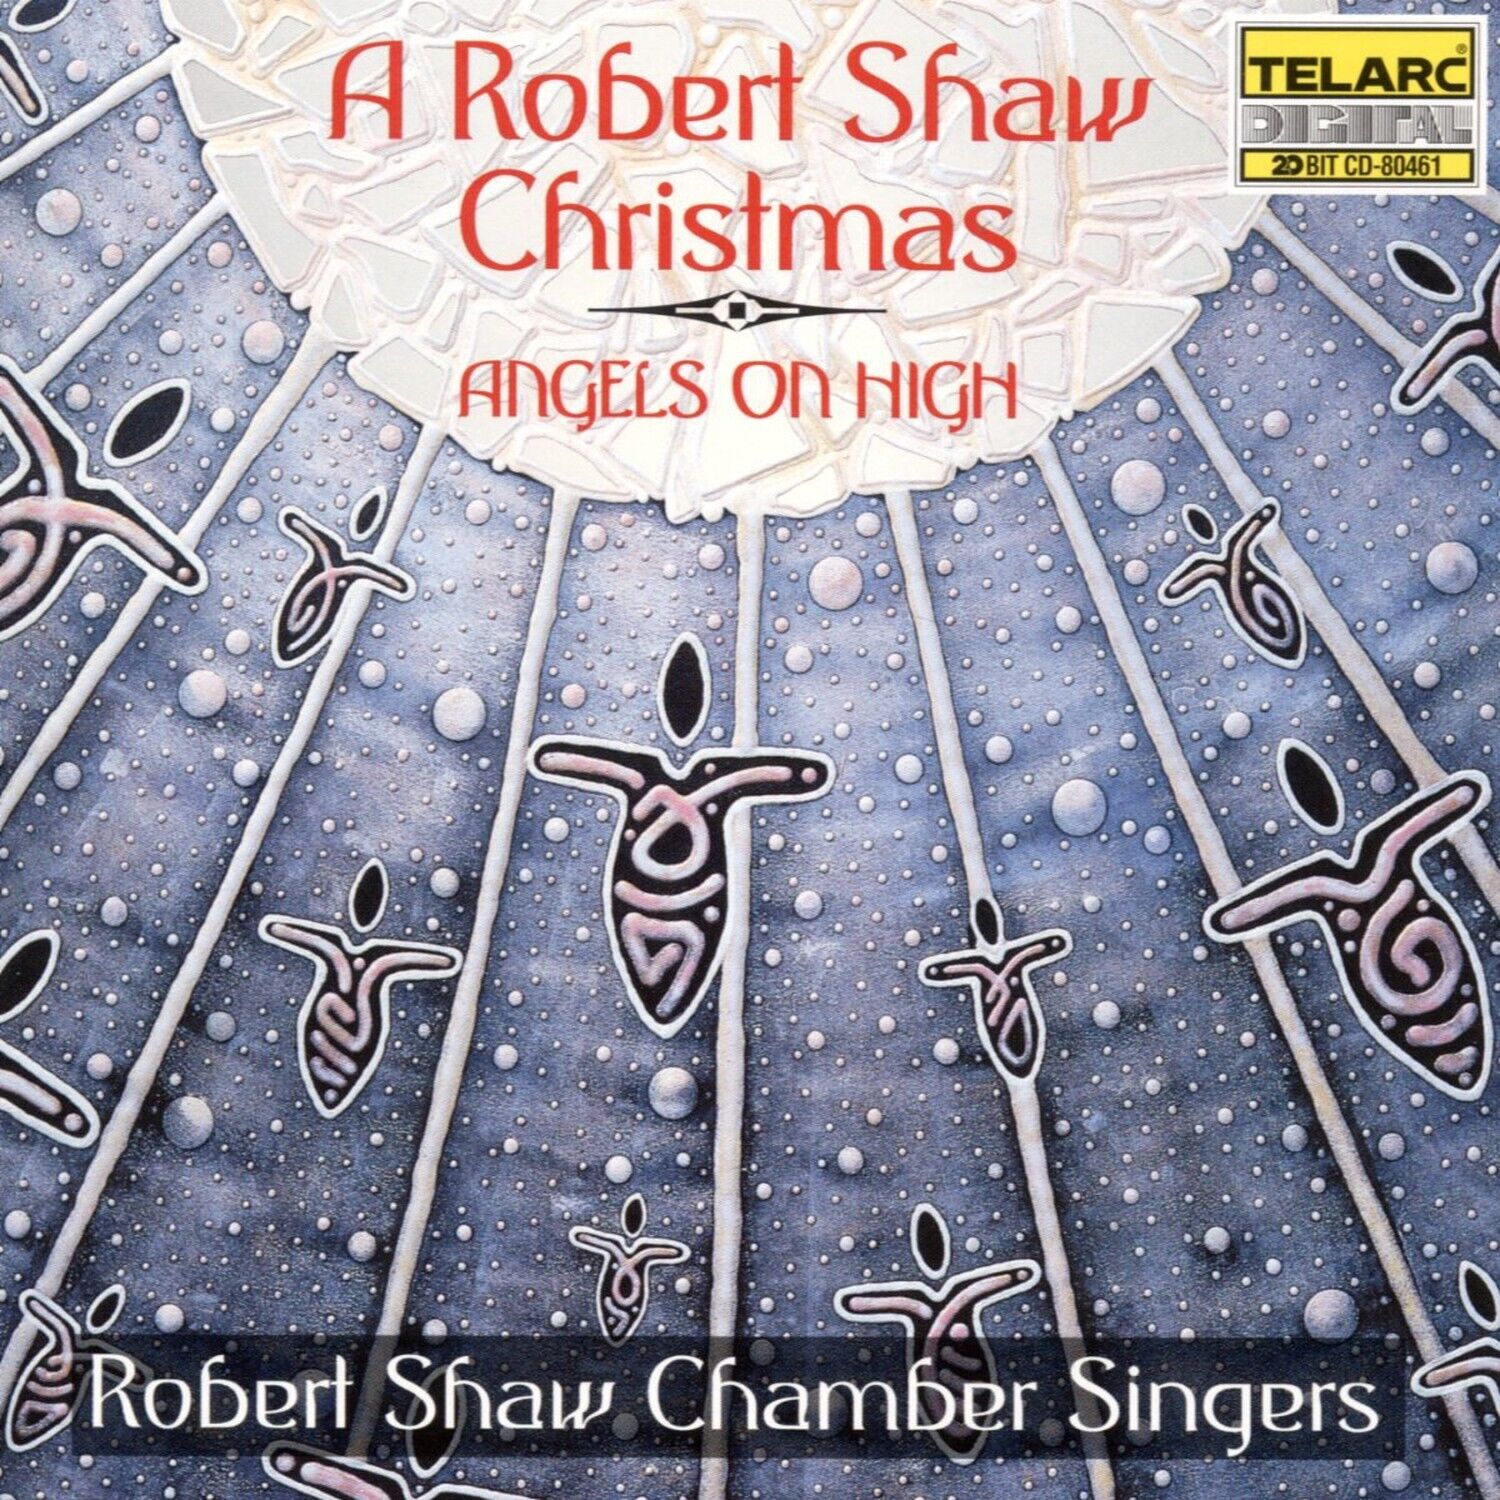 A Robert Shaw Christmas: Angels on High